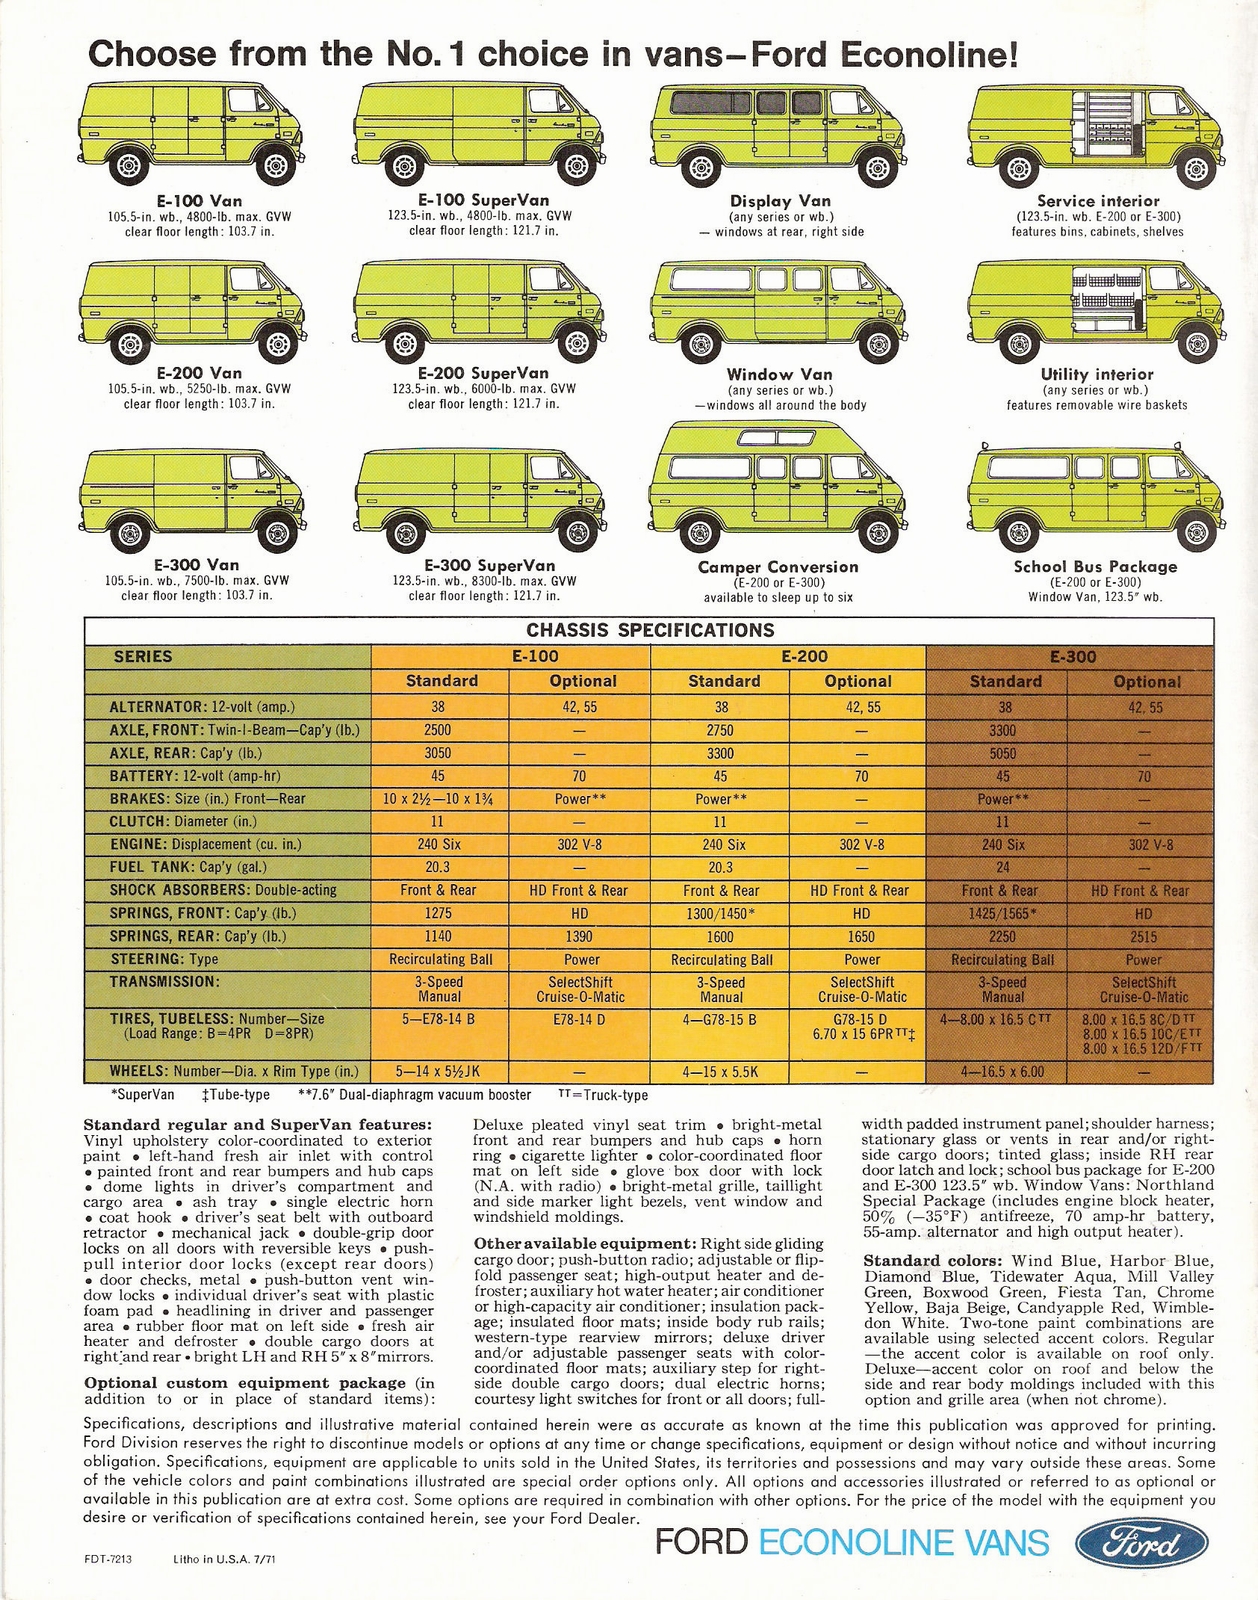 n_1972 Ford Econoline Vans-12.jpg